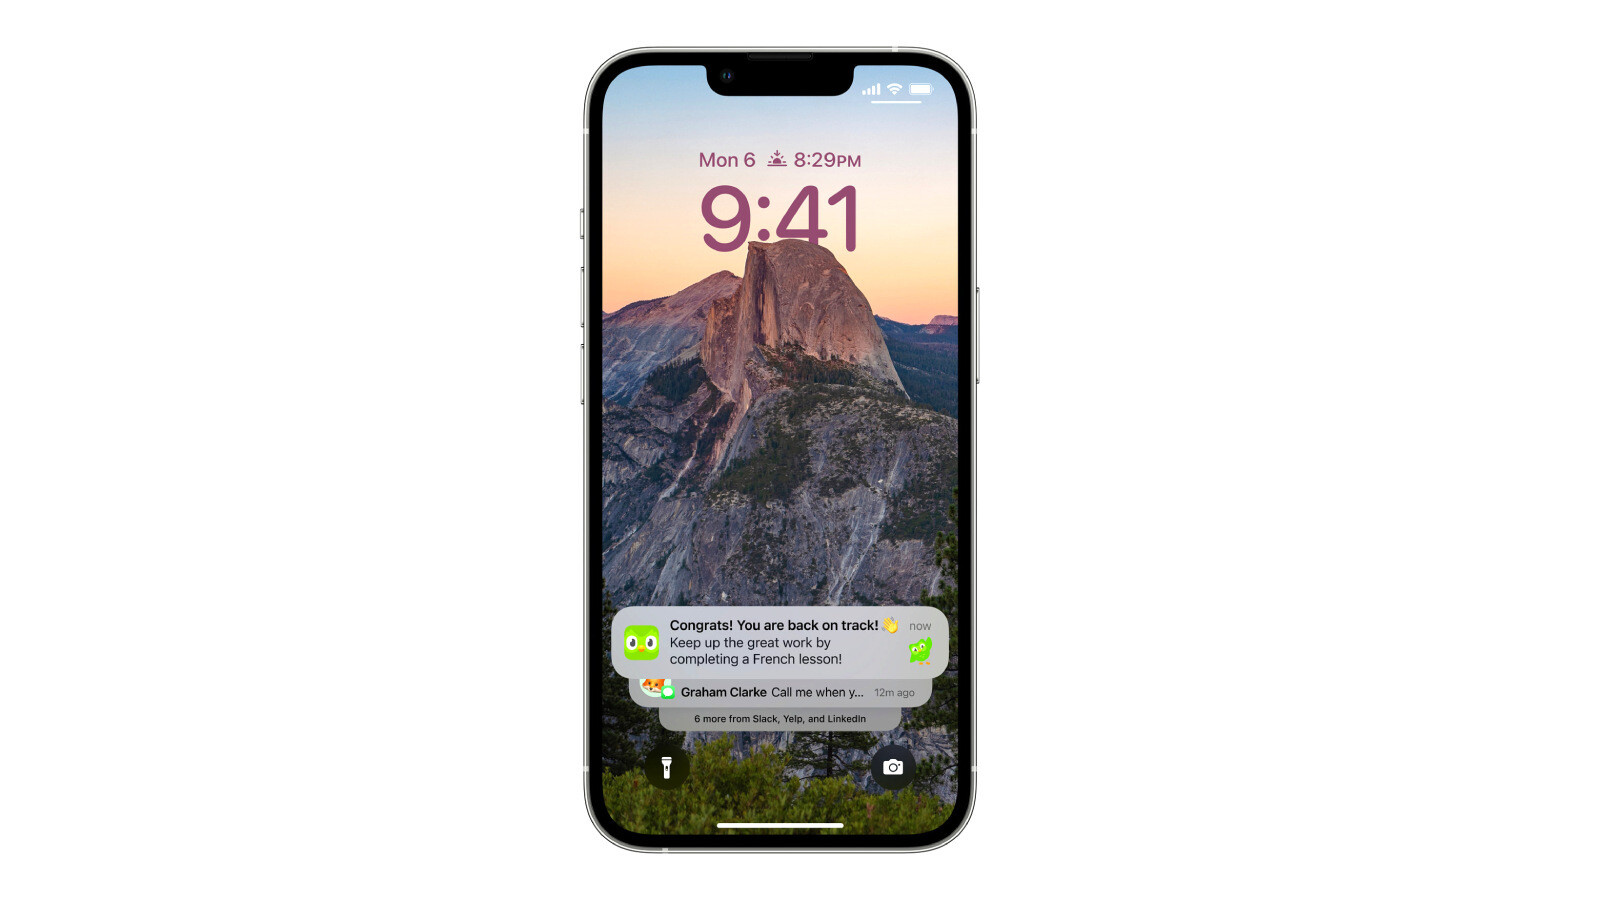 Đã đến lúc thay đổi hình nền màn hình khóa để tạo sự mới mẻ cho chiếc điện thoại của bạn rồi! Hình ảnh liên quan sẽ hướng dẫn bạn thay đổi hình nền màn hình khóa tự động trên iOS 16 một cách đơn giản và nhanh chóng nhất. Và bạn sẽ thấy rằng, chinh phục tính năng này thật dễ dàng.